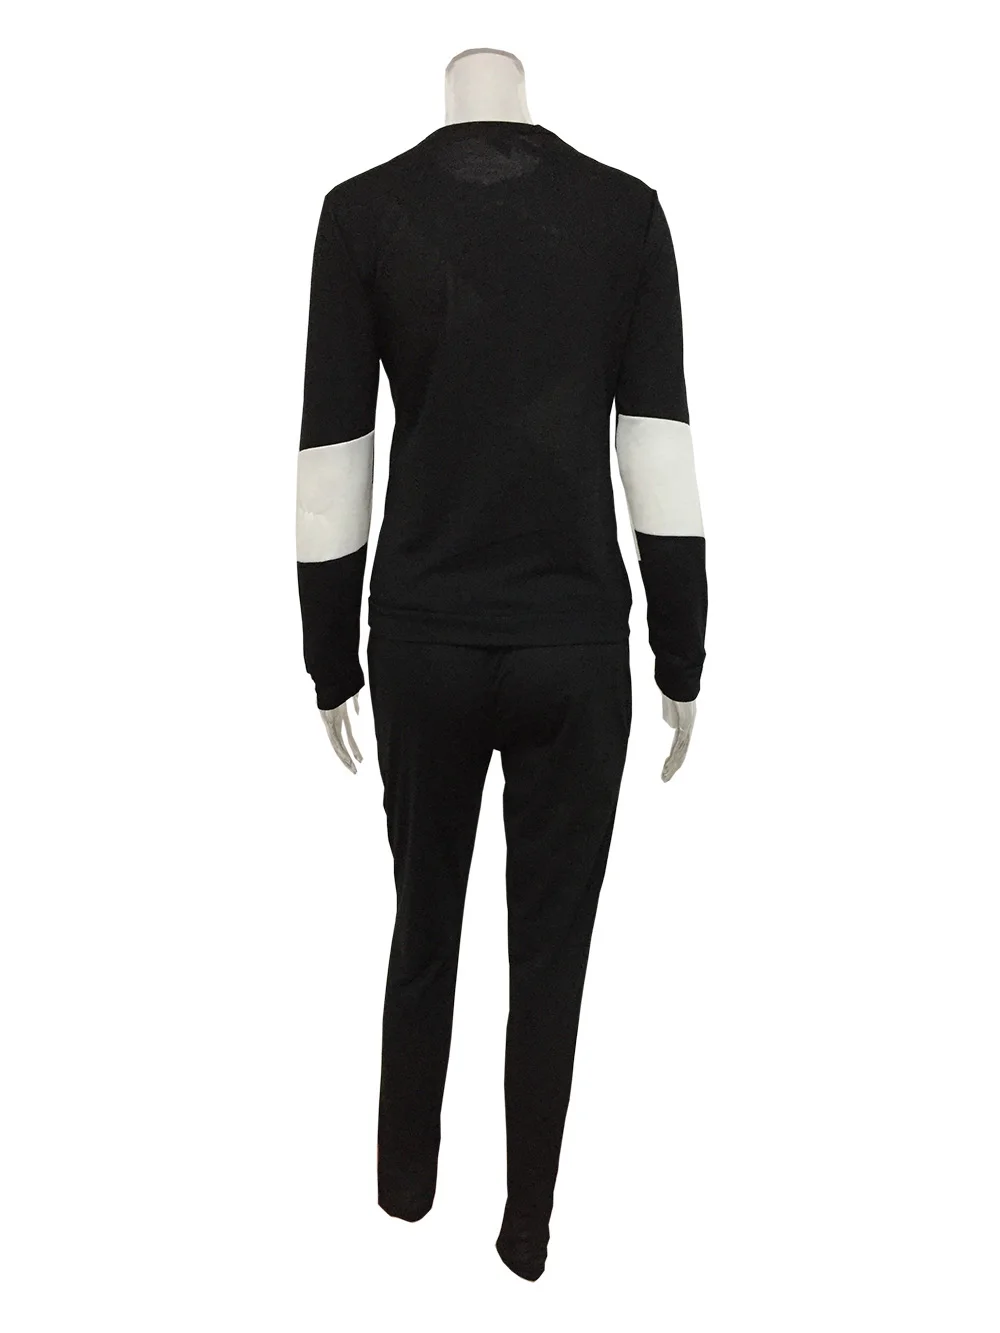 Женский спортивный костюм из 2 предметов, женский черный спортивный костюм, толстовка на молнии+ штаны, женская одежда с длинным рукавом, спортивный костюм